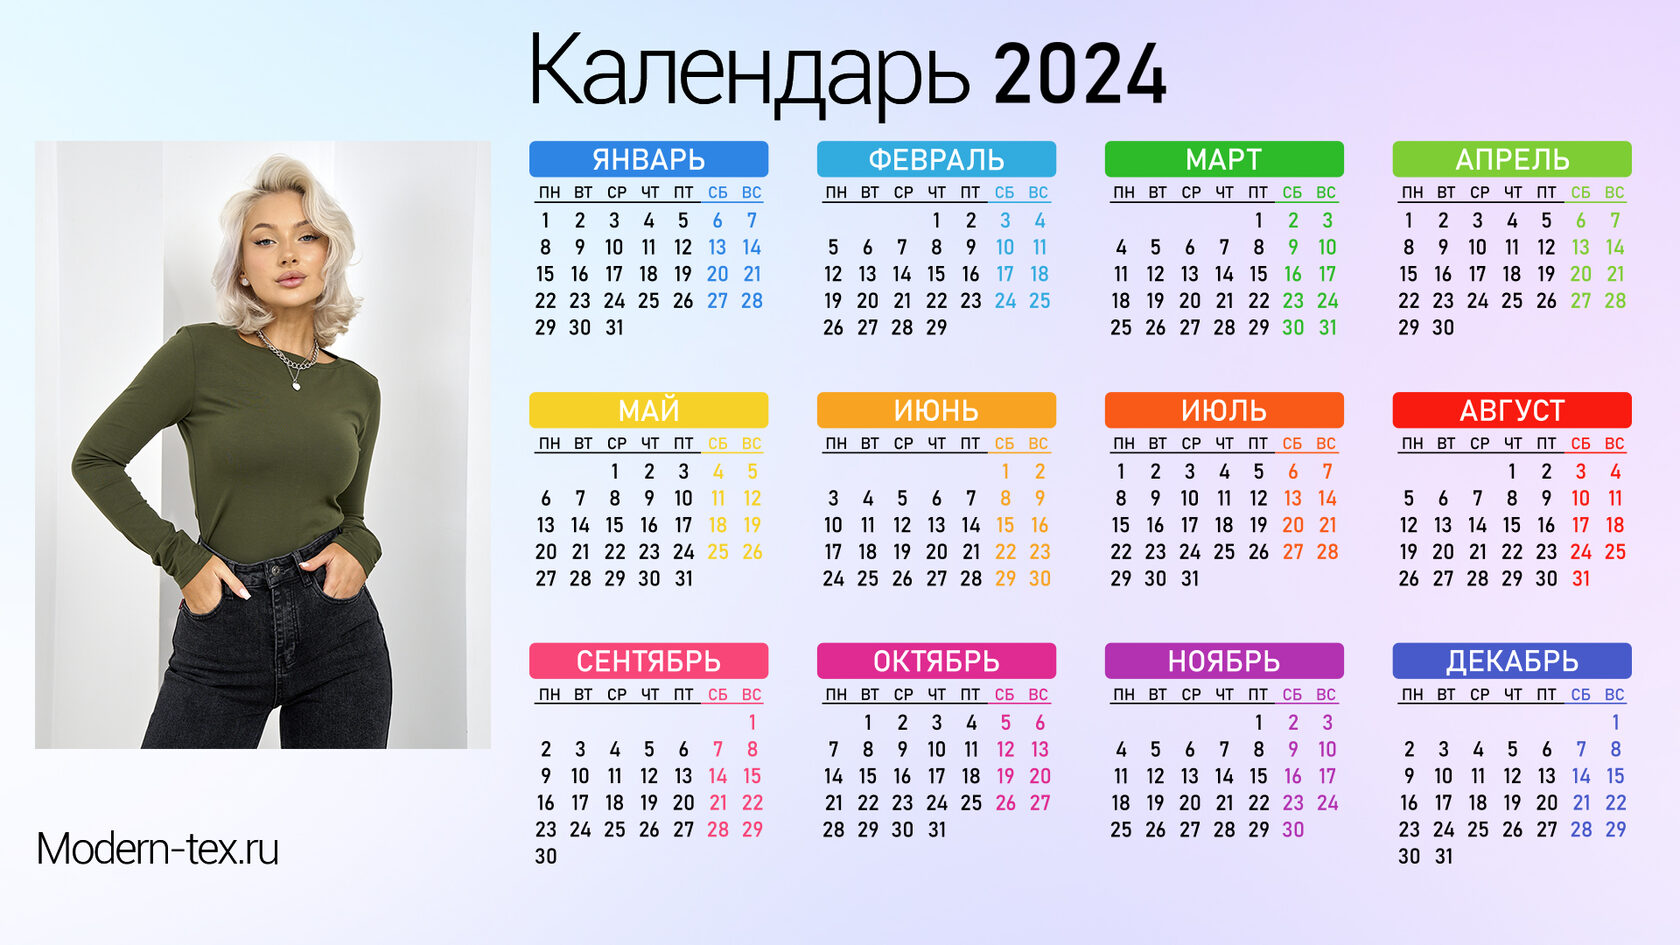 Норма апрель 2024 производственный календарь